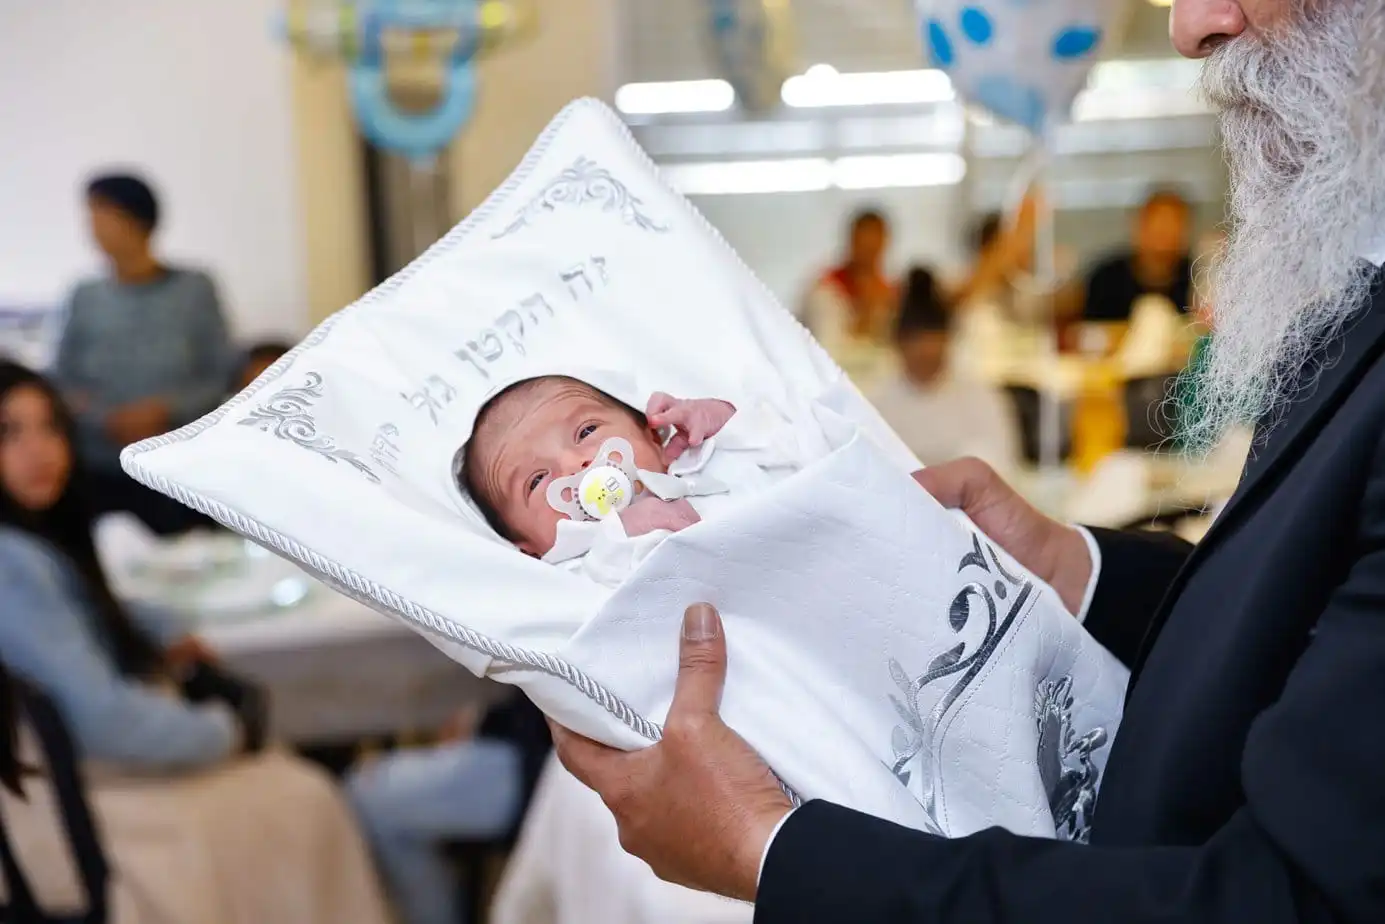 רב מחזיק תינוק בכרית לפני הברית מילה. צולם על ידי צלם לברית מילה. תחת קטגוריית צלם לברית של מגנטסטאר צילום אירועים